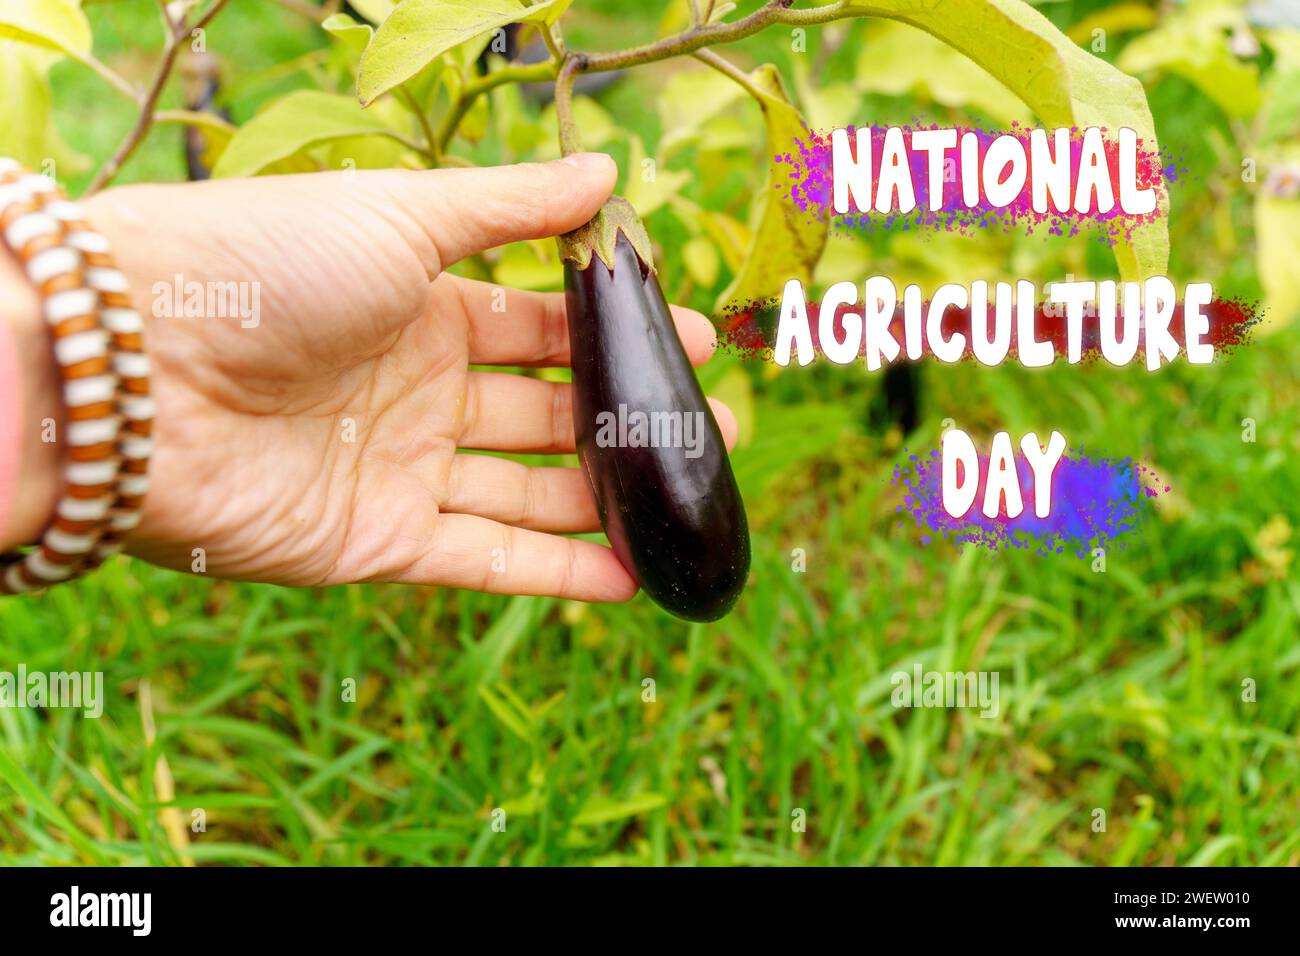 Festeggiamo la giornata nazionale dell'agricoltura con la Bounty of Natures Harvest Foto Stock